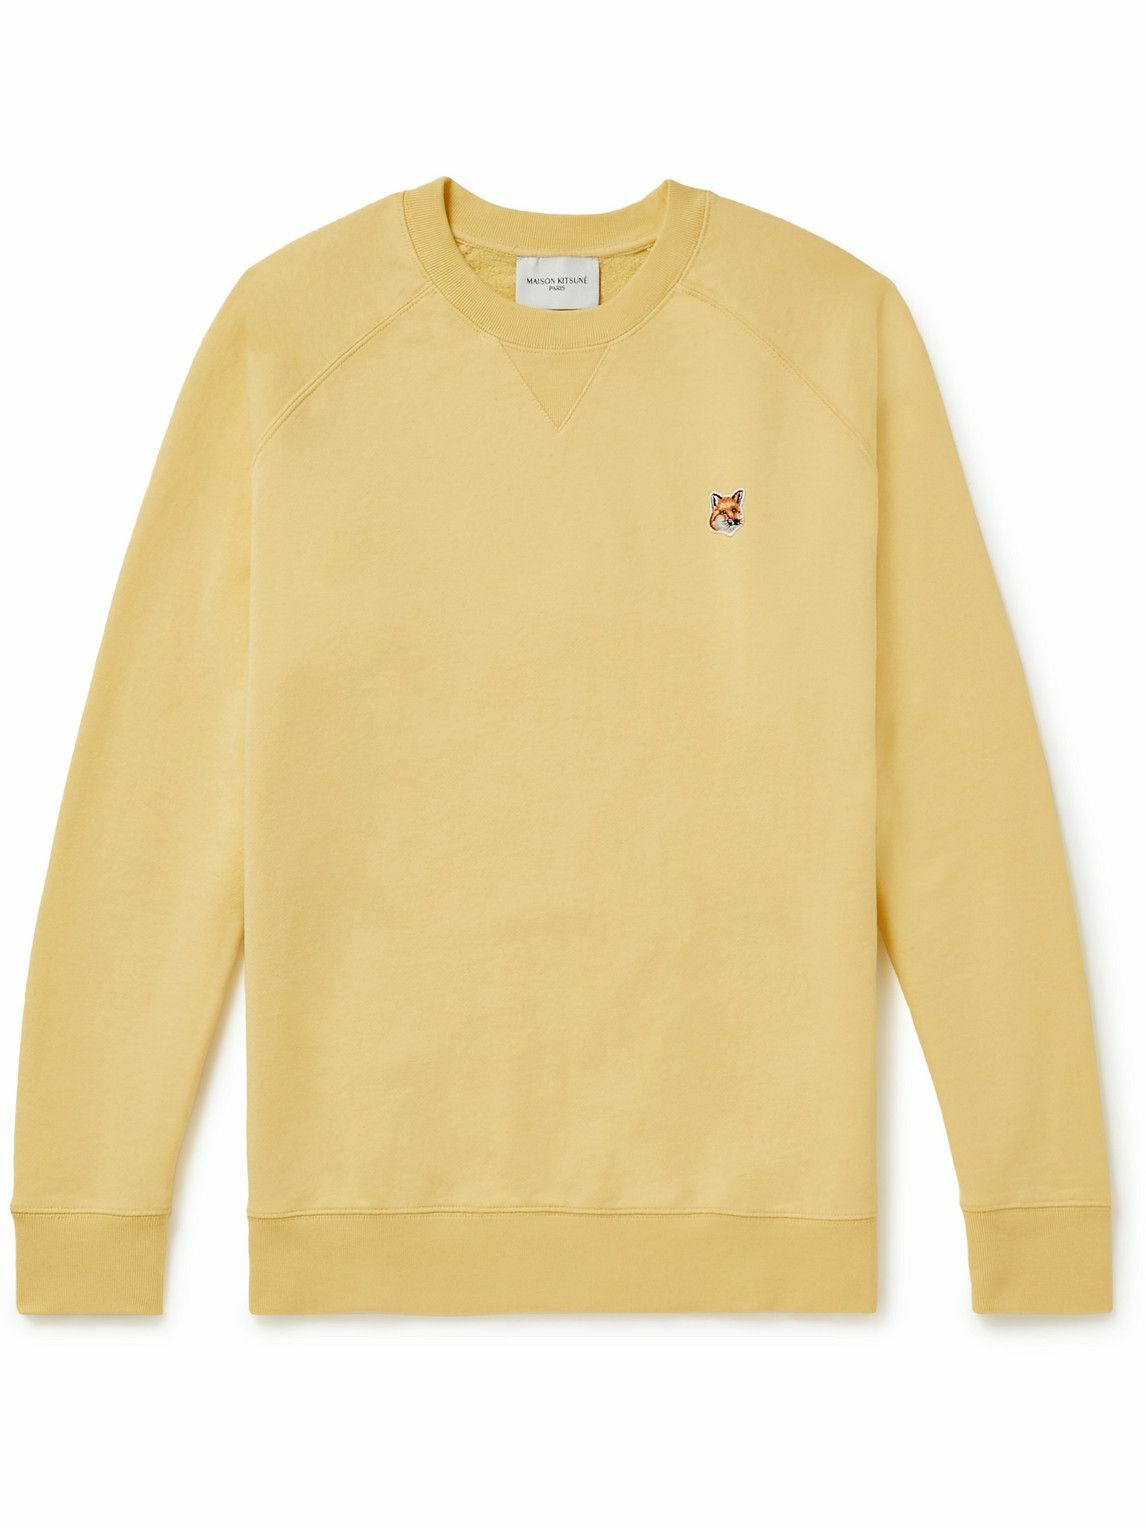 Maison Kitsuné - Logo-Appliquéd Cotton-Jersey Sweatshirt - Yellow ...